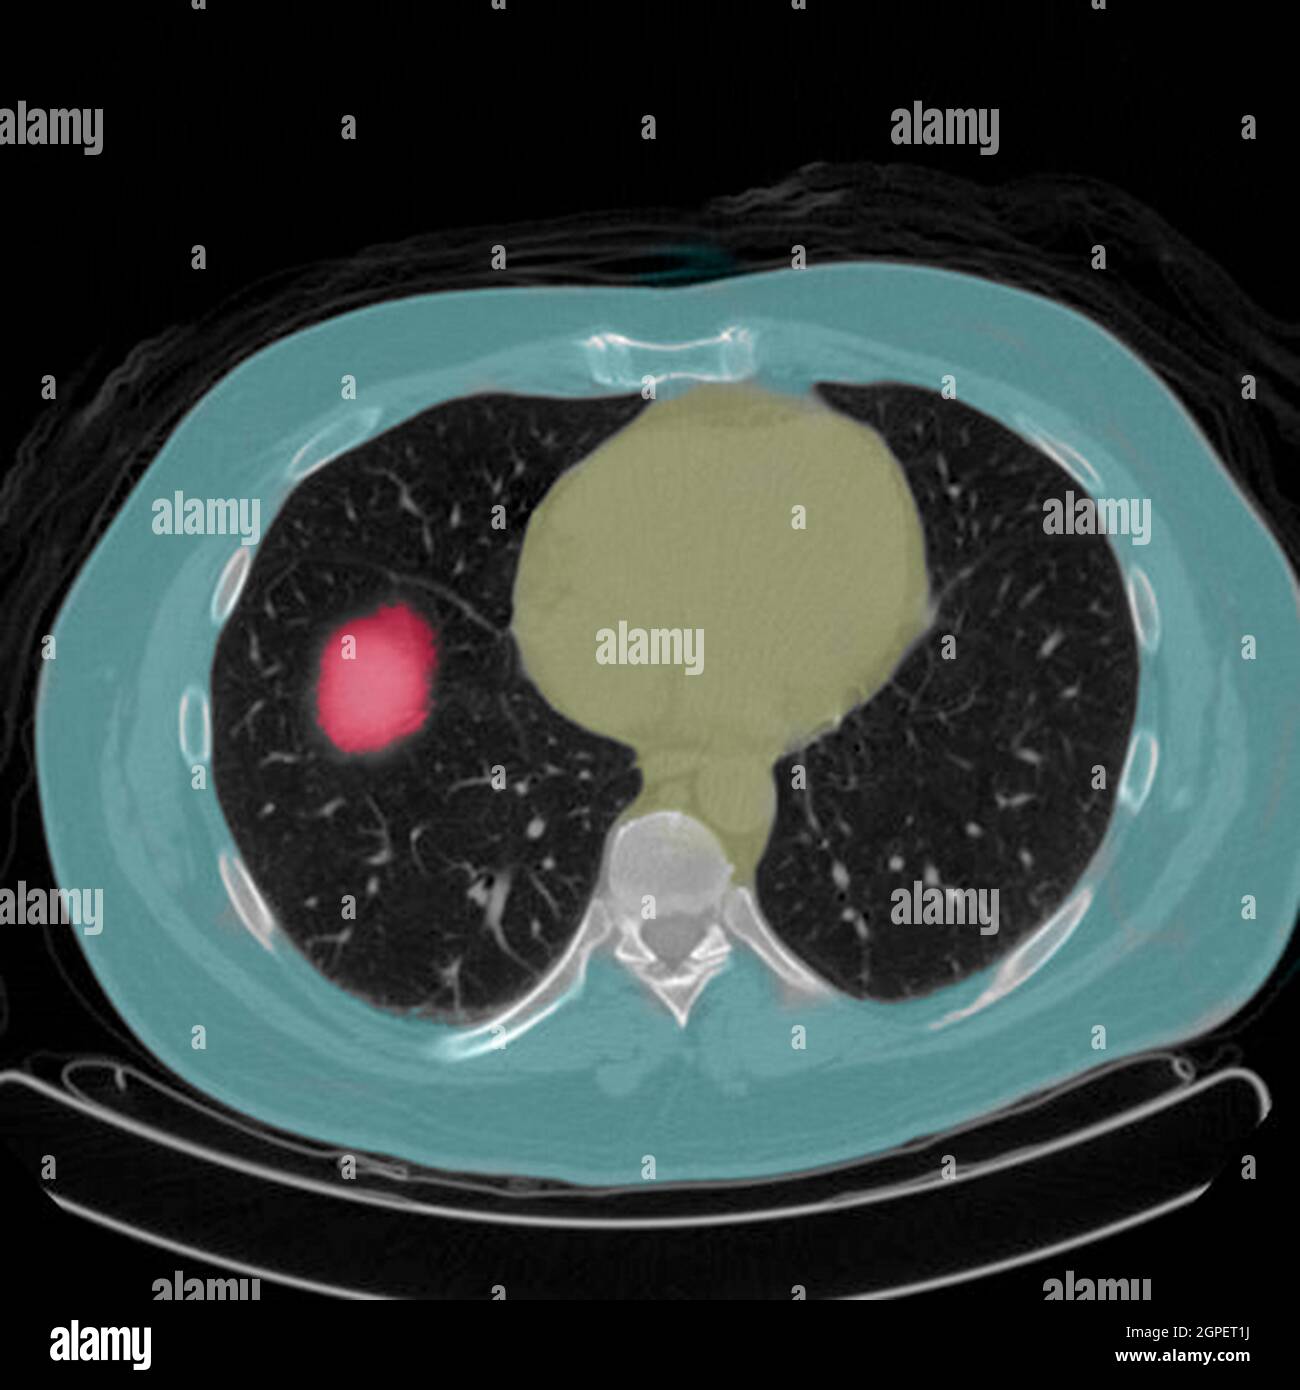 Scansione per tomografia a emissione di positroni (PET) di un paziente maschio di 54 anni. Un tumore può essere visto nel lobo superiore sinistro dei suoi polmoni Foto Stock